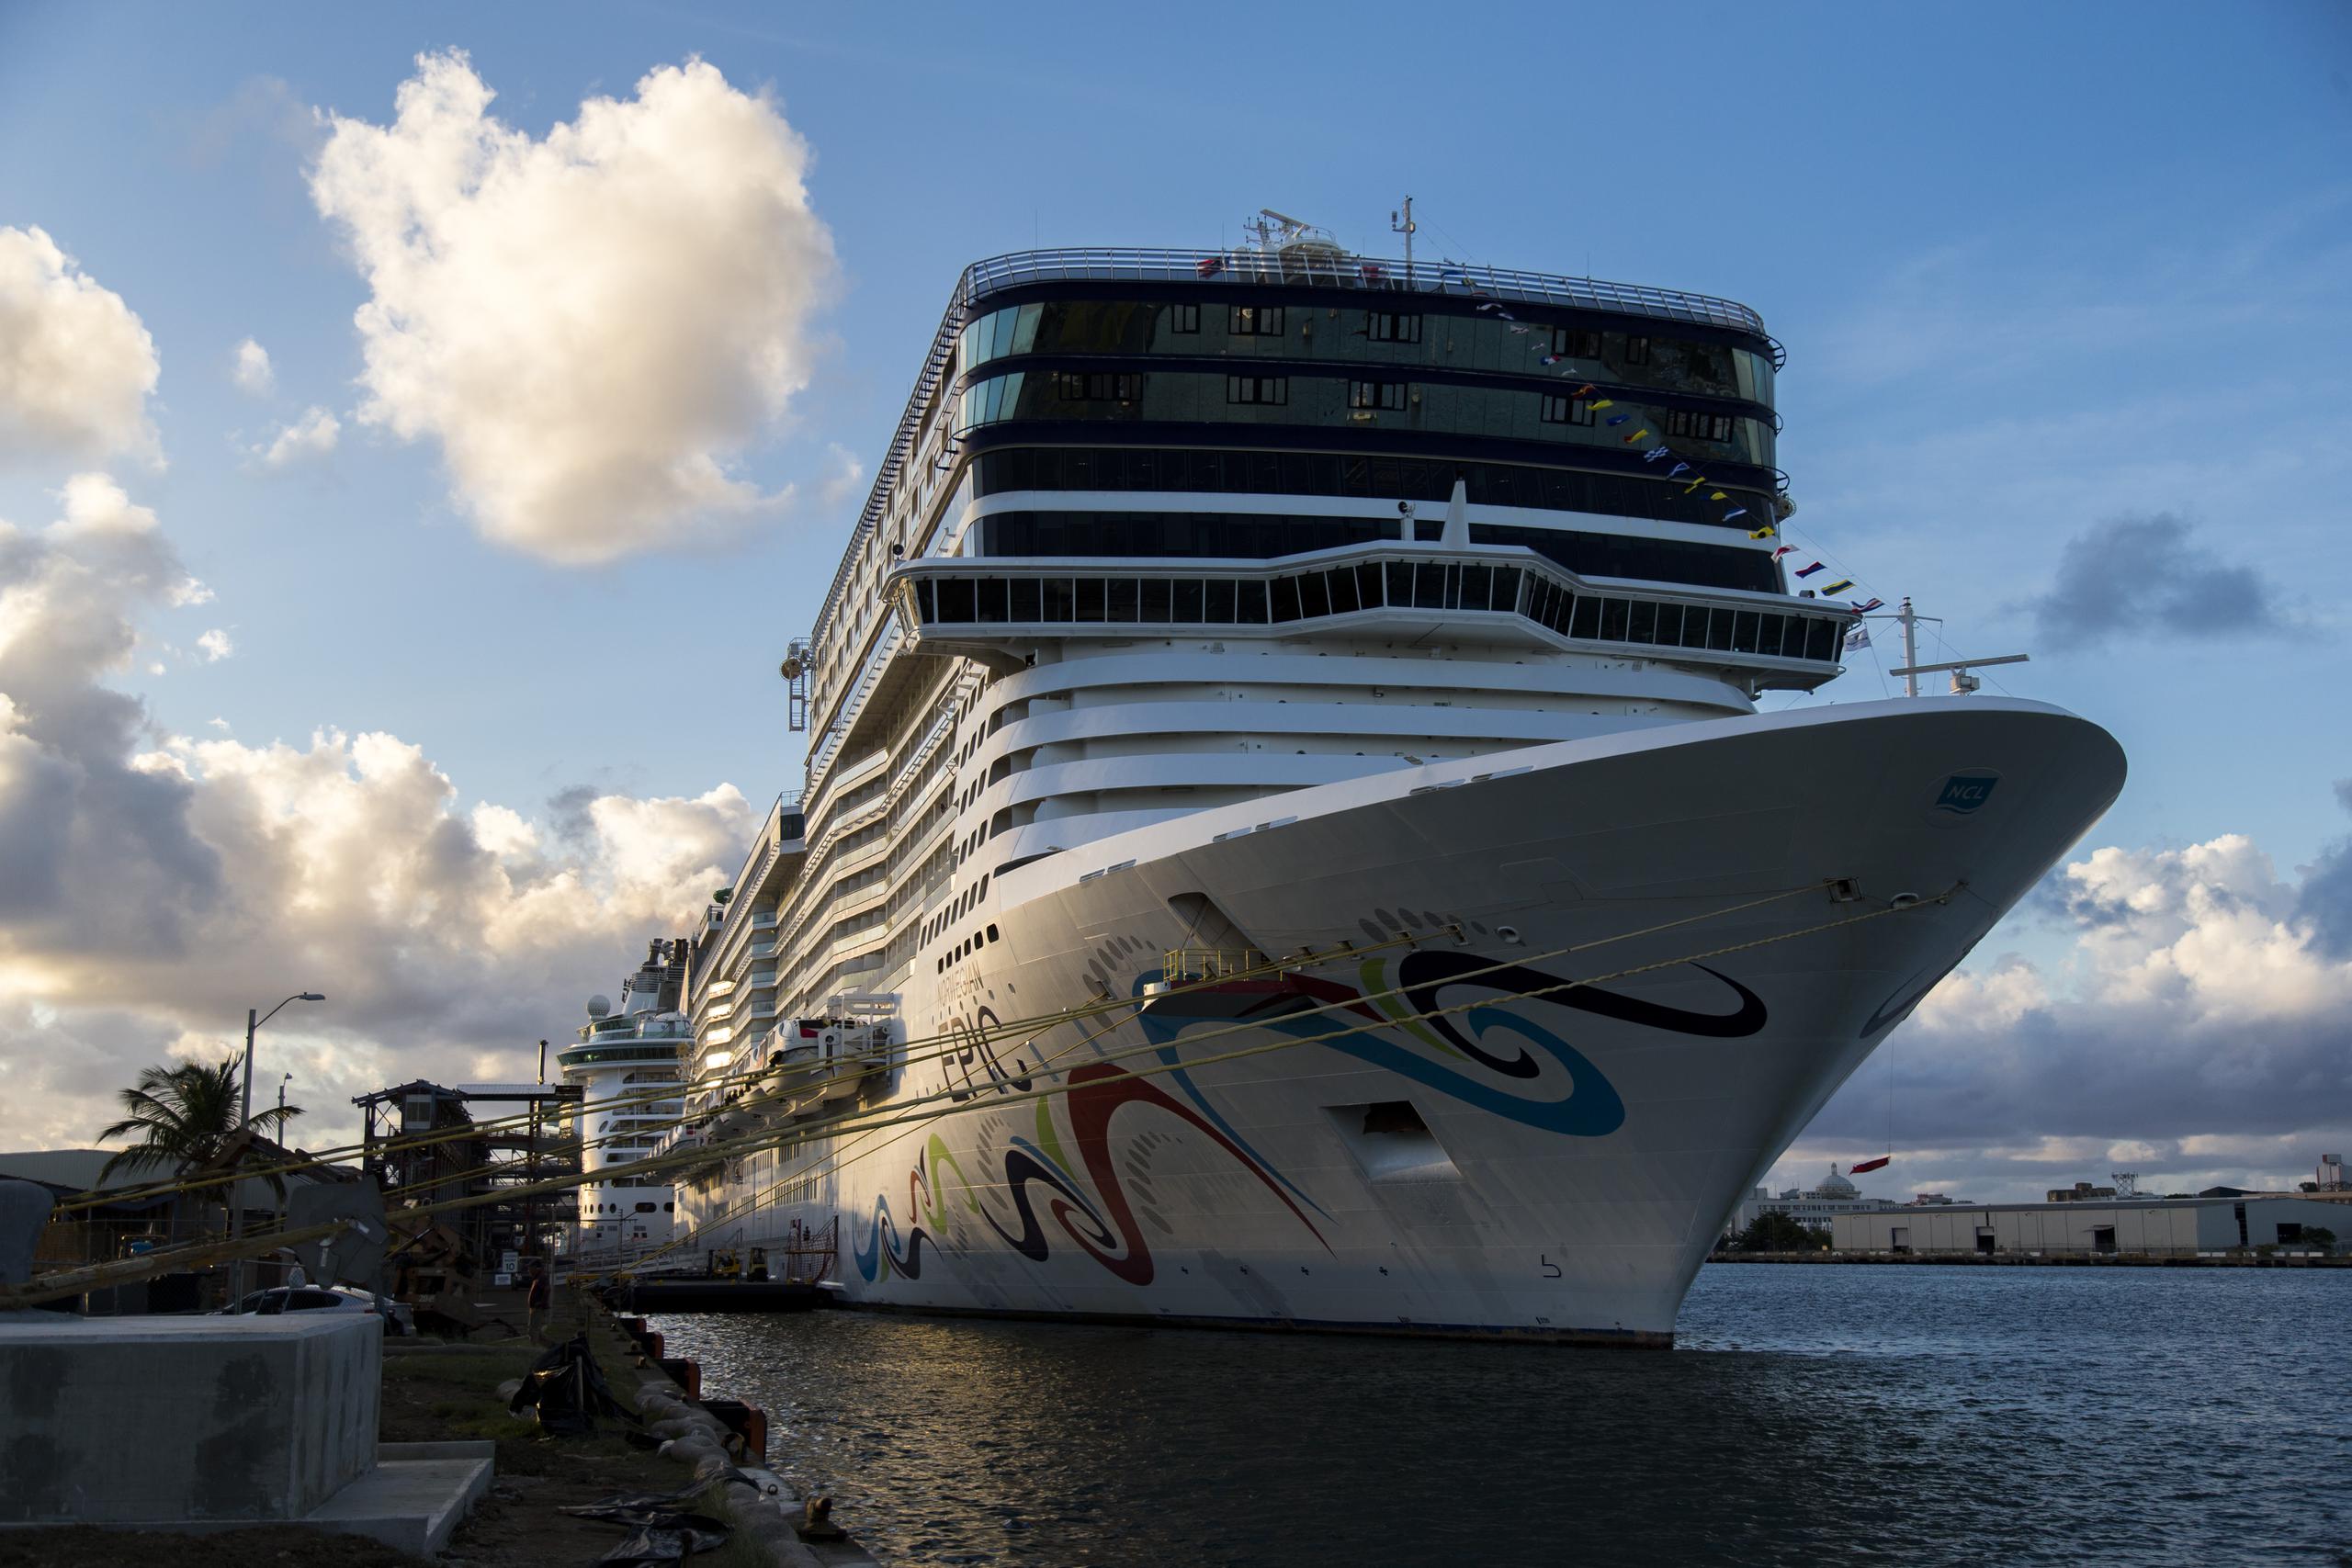 La Fiscalía de Florida detalló que Norwegian Cruise Lines proporcionó a su equipo de ventas "frases imprecisas para responder a las preocupaciones de los clientes sobre COVID-19".